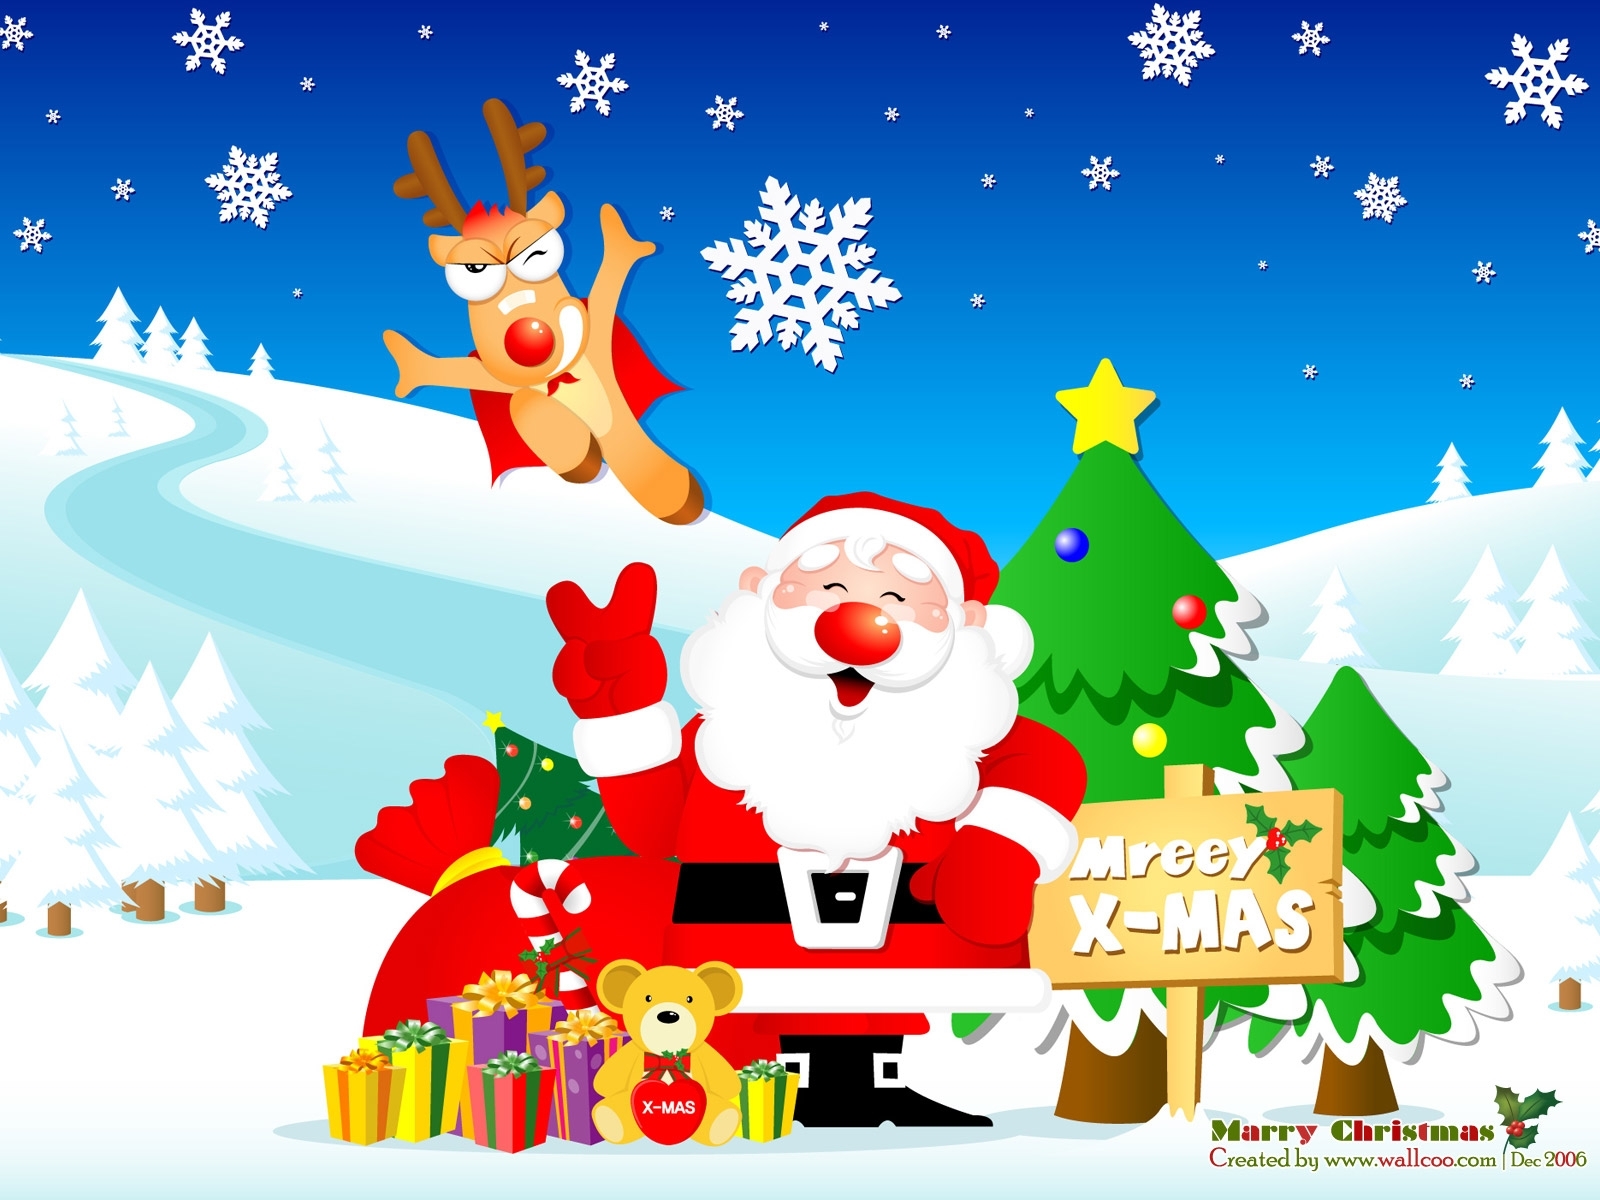 Скачать картинку Санта Клаус (Santa Claus), Новый Год (New Year), Праздники, Рождество (Christmas Xmas), Рисунки в телефон бесплатно.